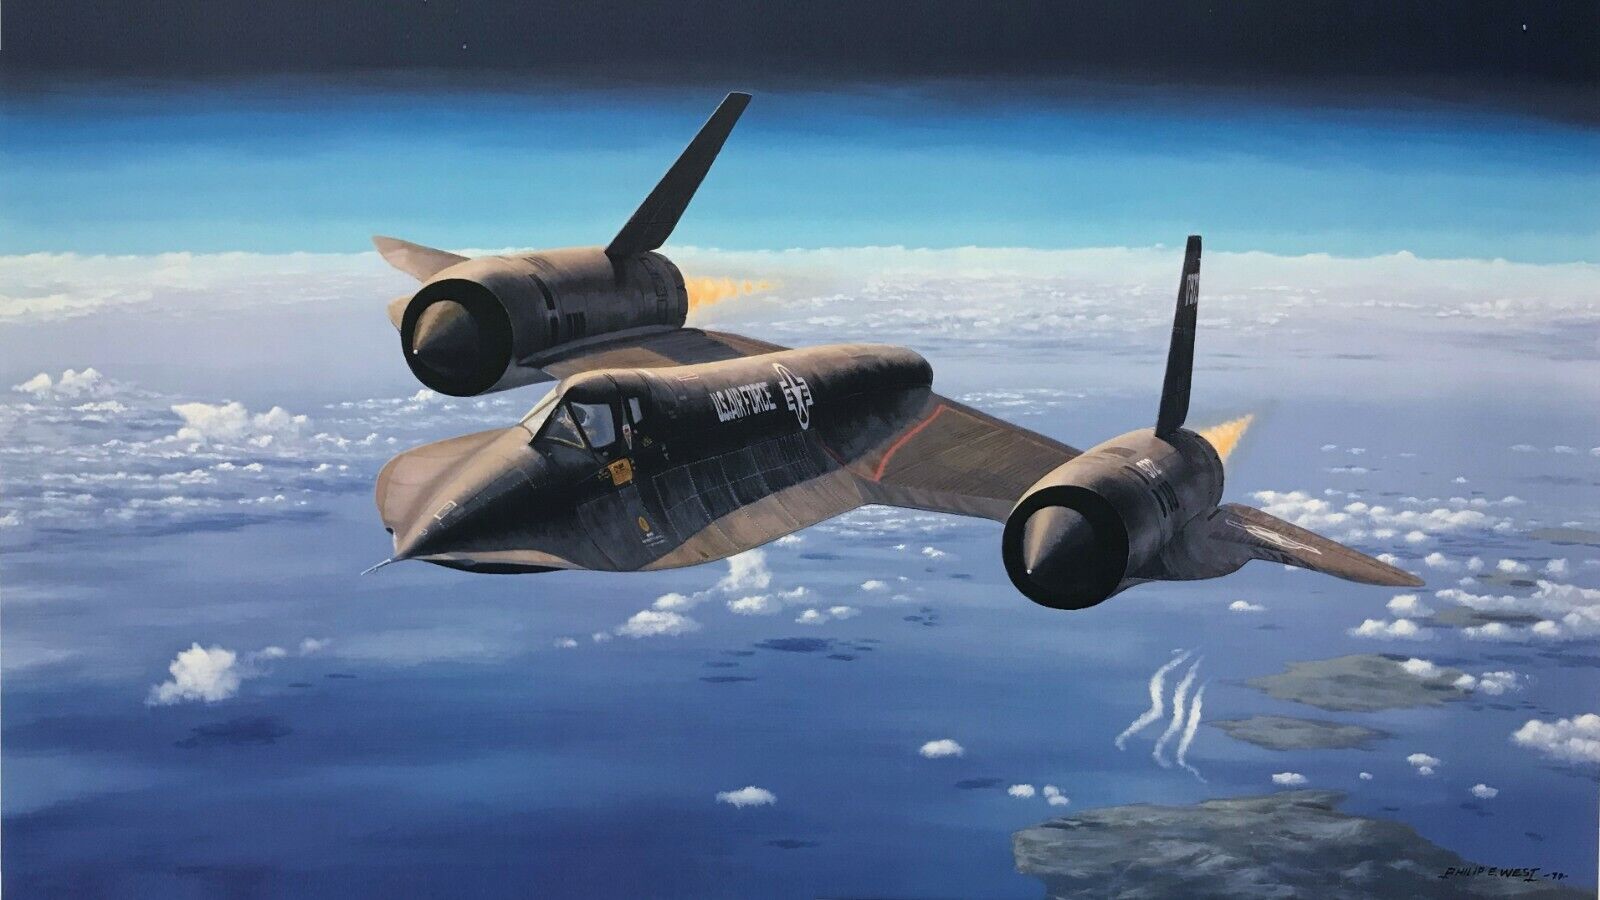 Habu 972 by Phillip West, aviation art featuring the SR-71 Blackbird